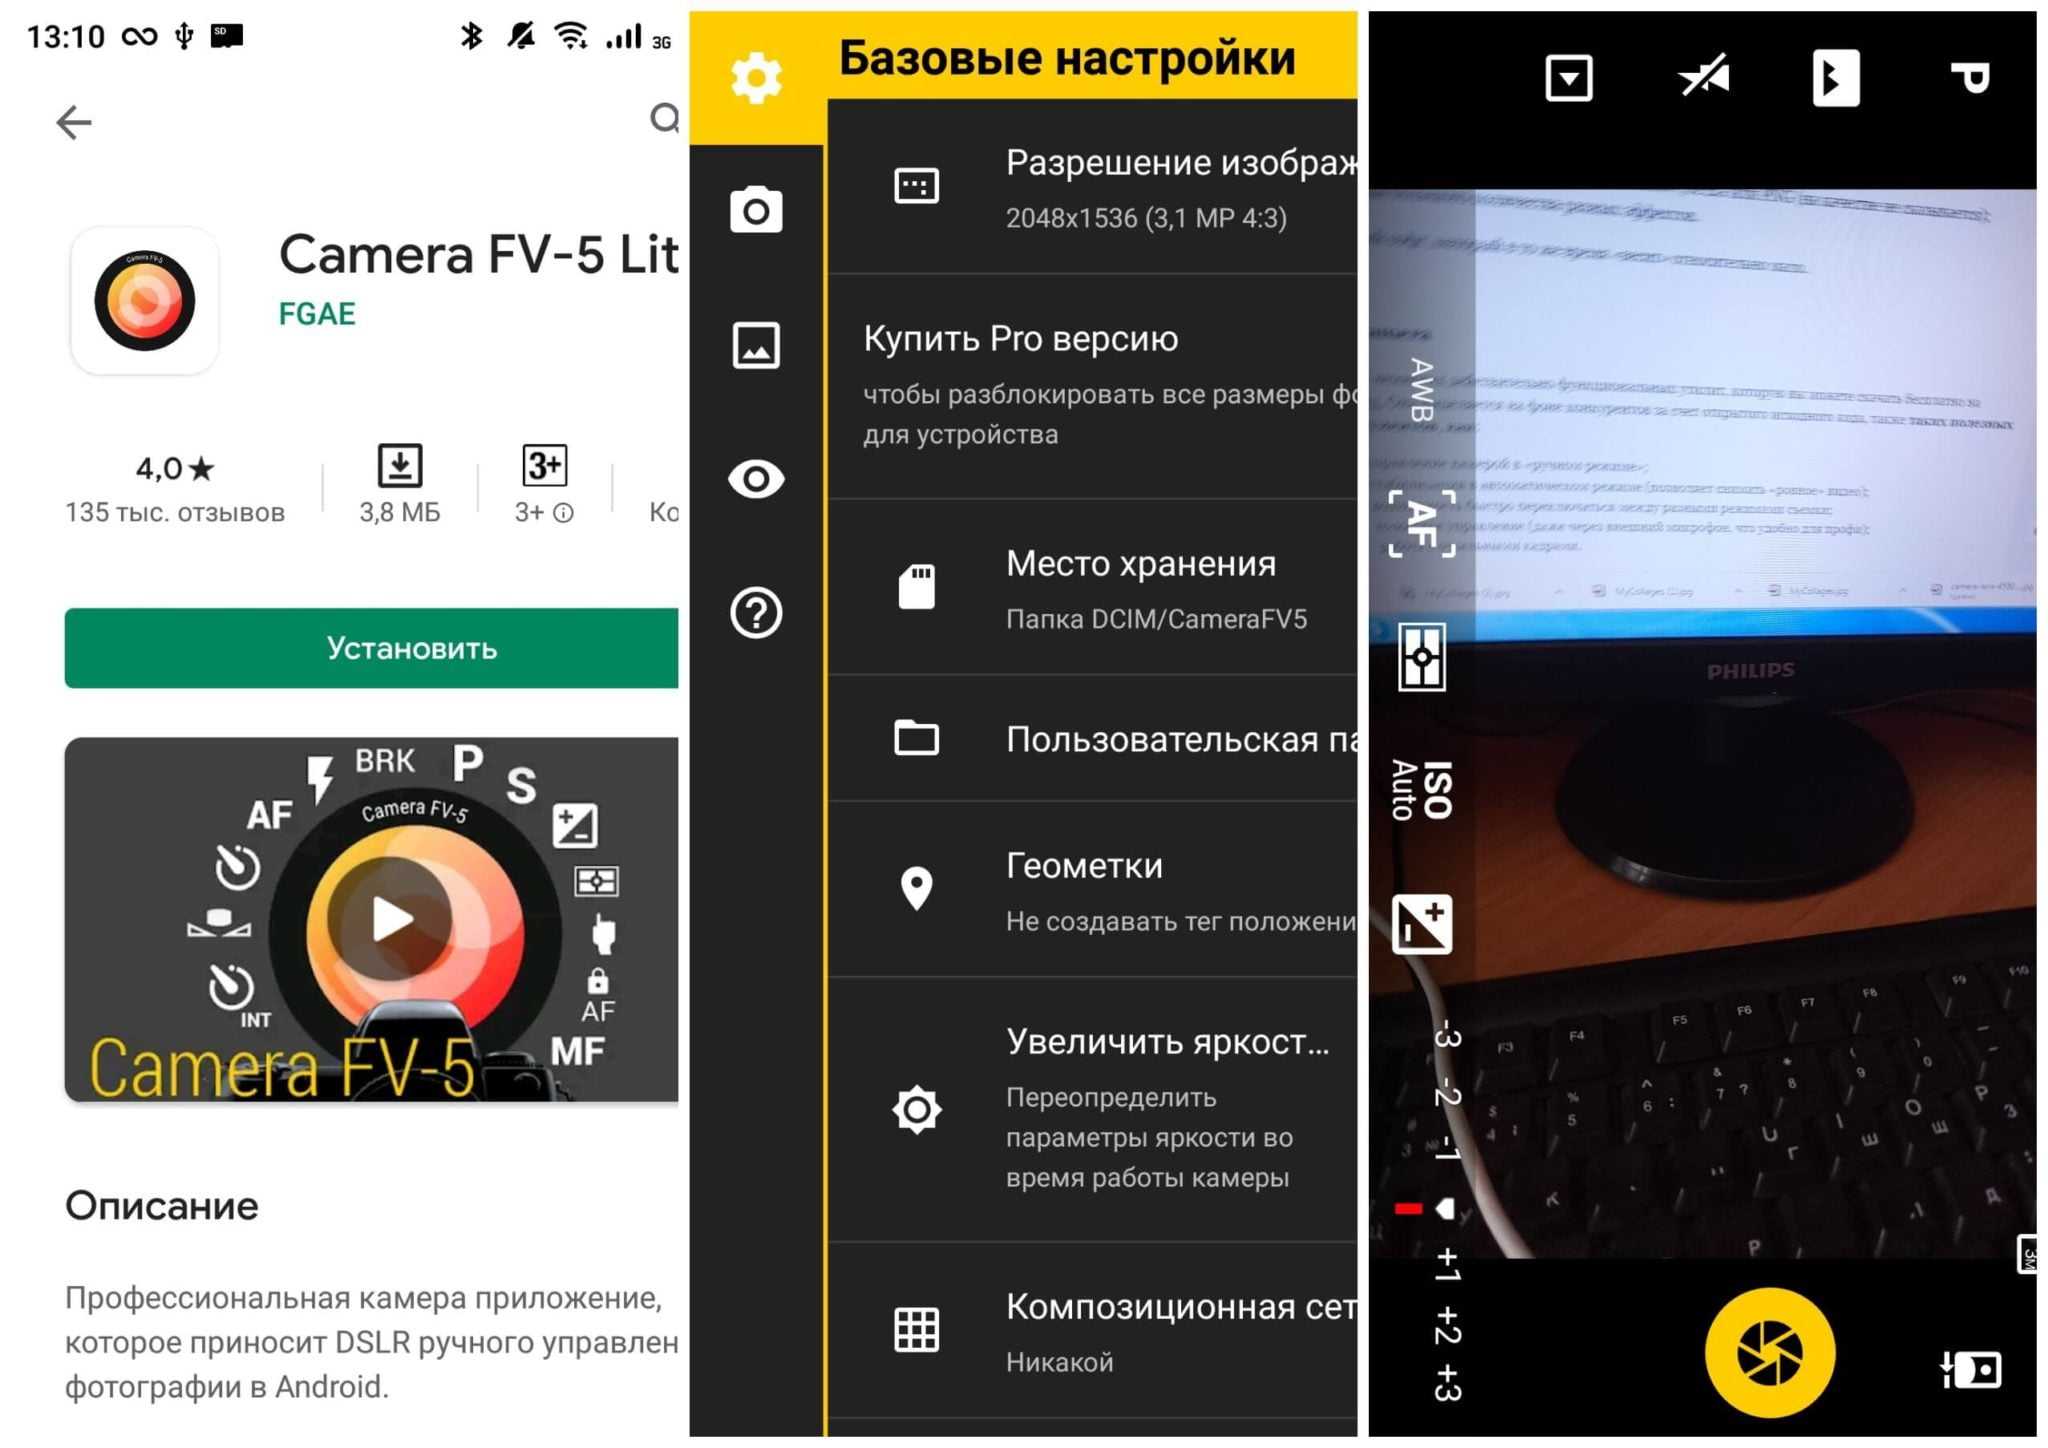 Как сделать камеру как на айфоне - инструкция для андроида тарифкин.ру
как сделать камеру как на айфоне - инструкция для андроида